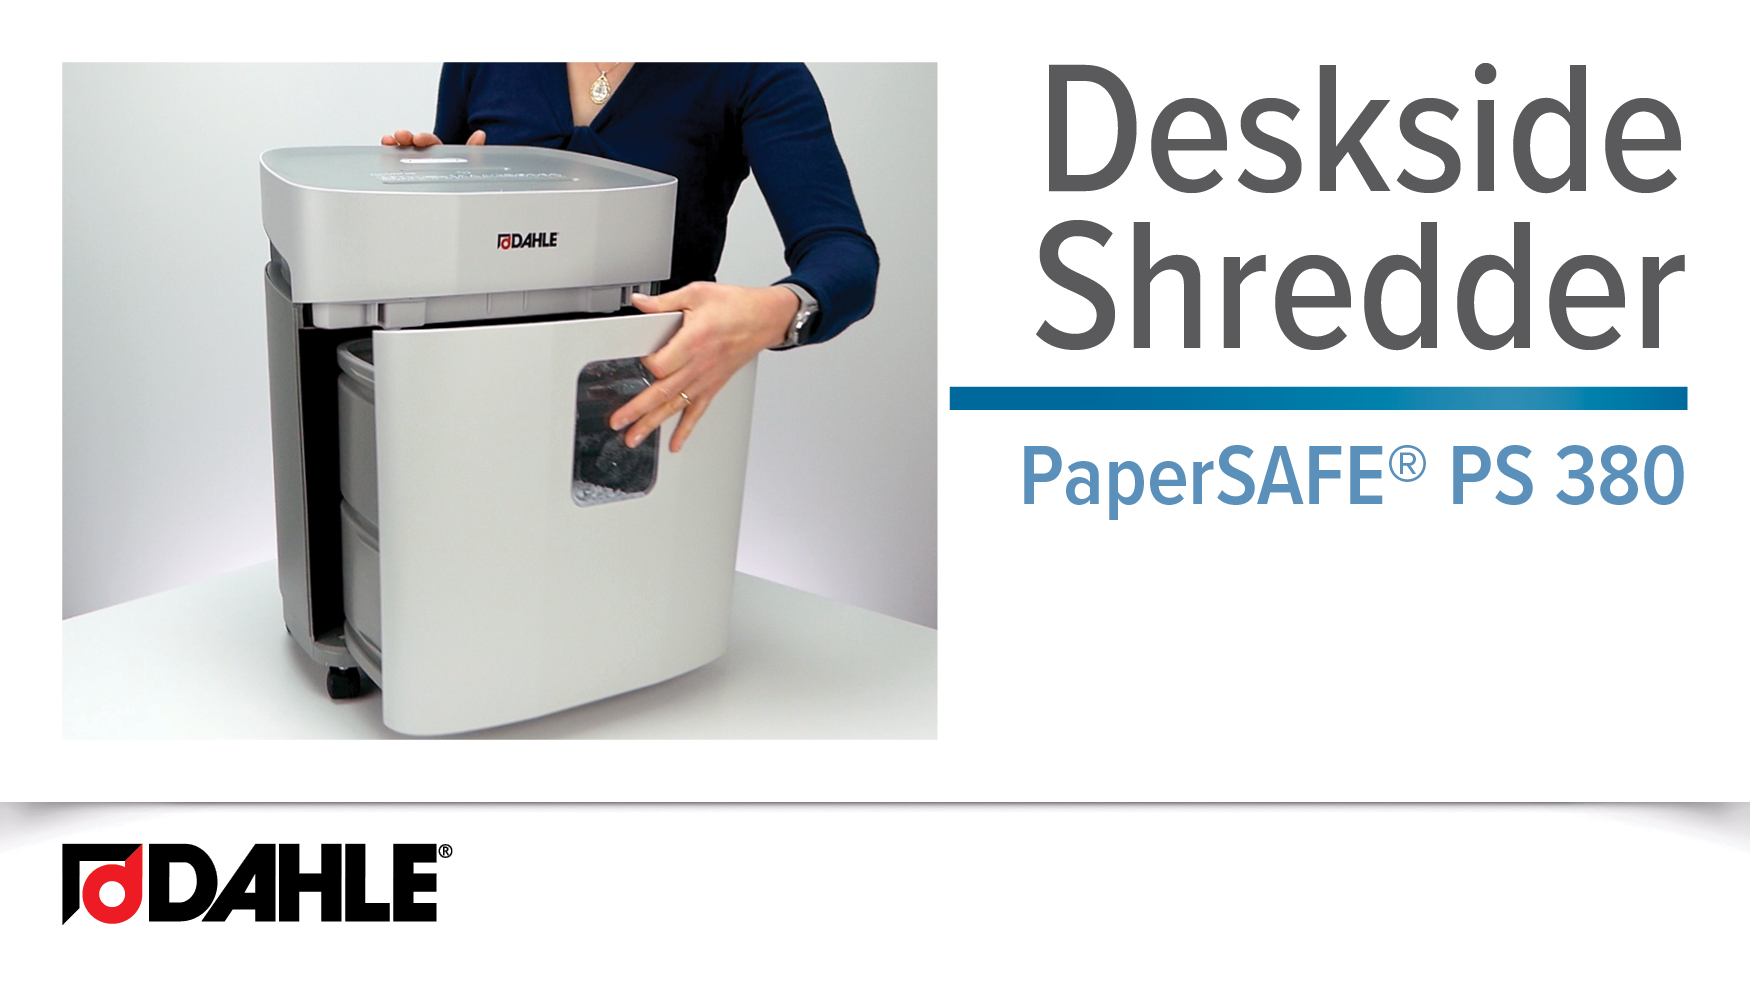 PaperSAFE® PS 380 Desk Side Shredder Video